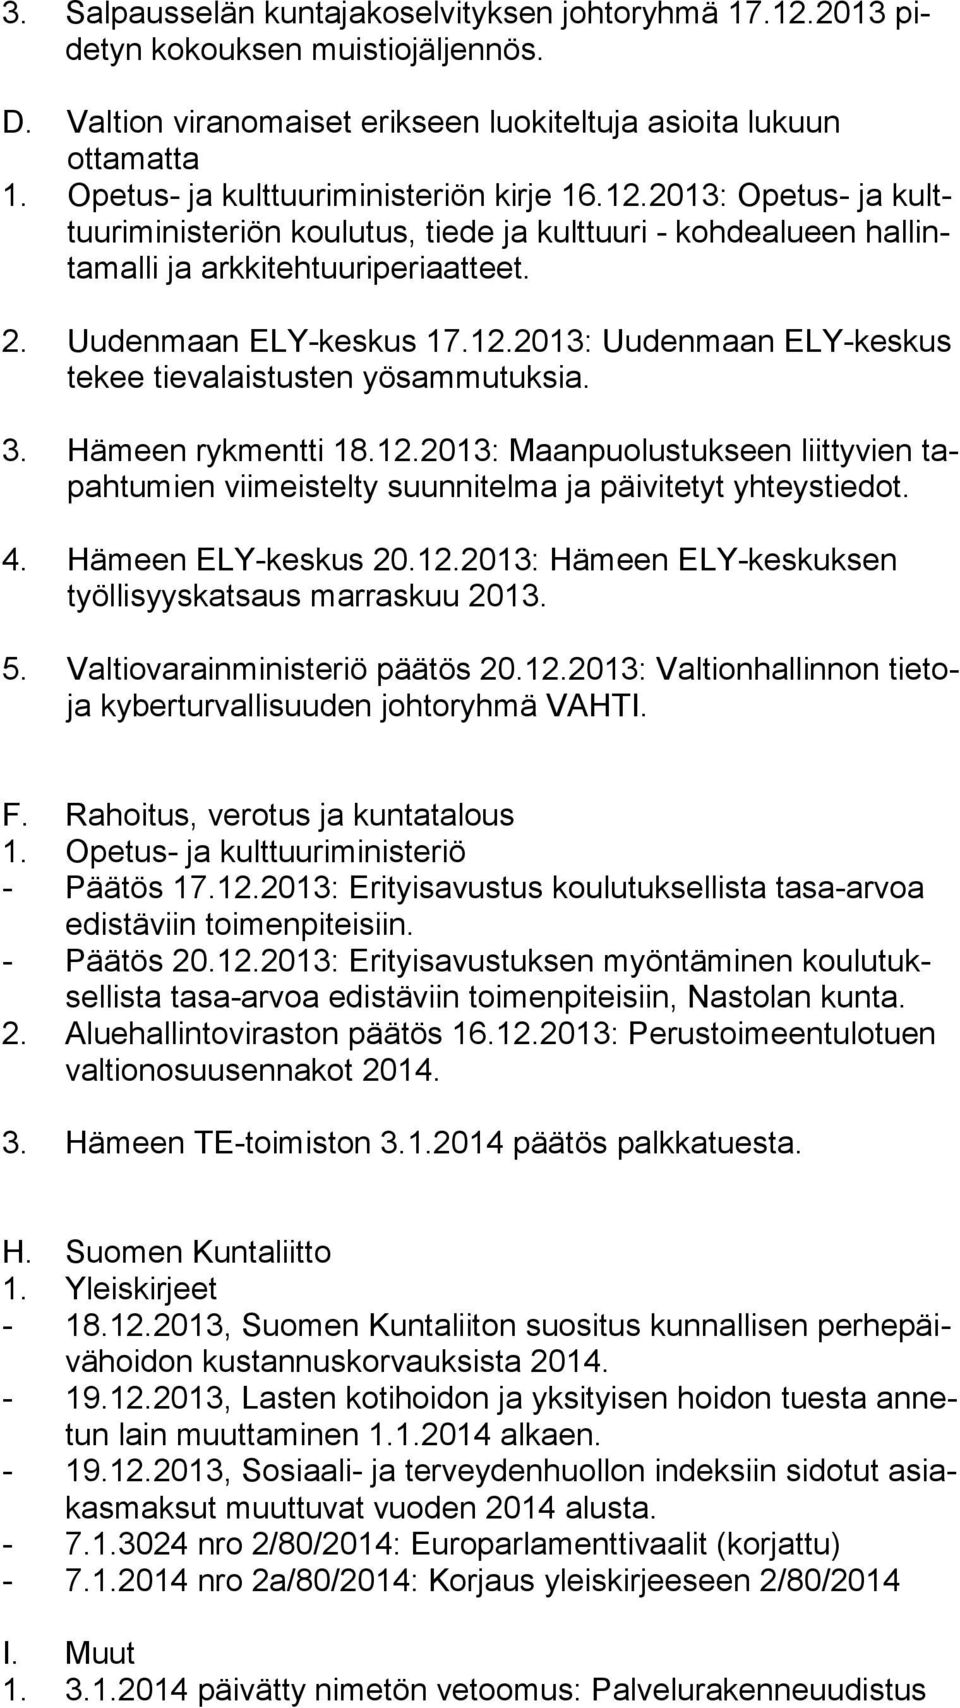 3. Hämeen rykmentti 18.12.2013: Maanpuolustukseen liittyvien tapahtumien viimeistelty suunnitelma ja päivitetyt yhteystiedot. 4. Hämeen ELY-keskus 20.12.2013: Hämeen ELY-keskuksen työllisyyskatsaus marraskuu 2013.